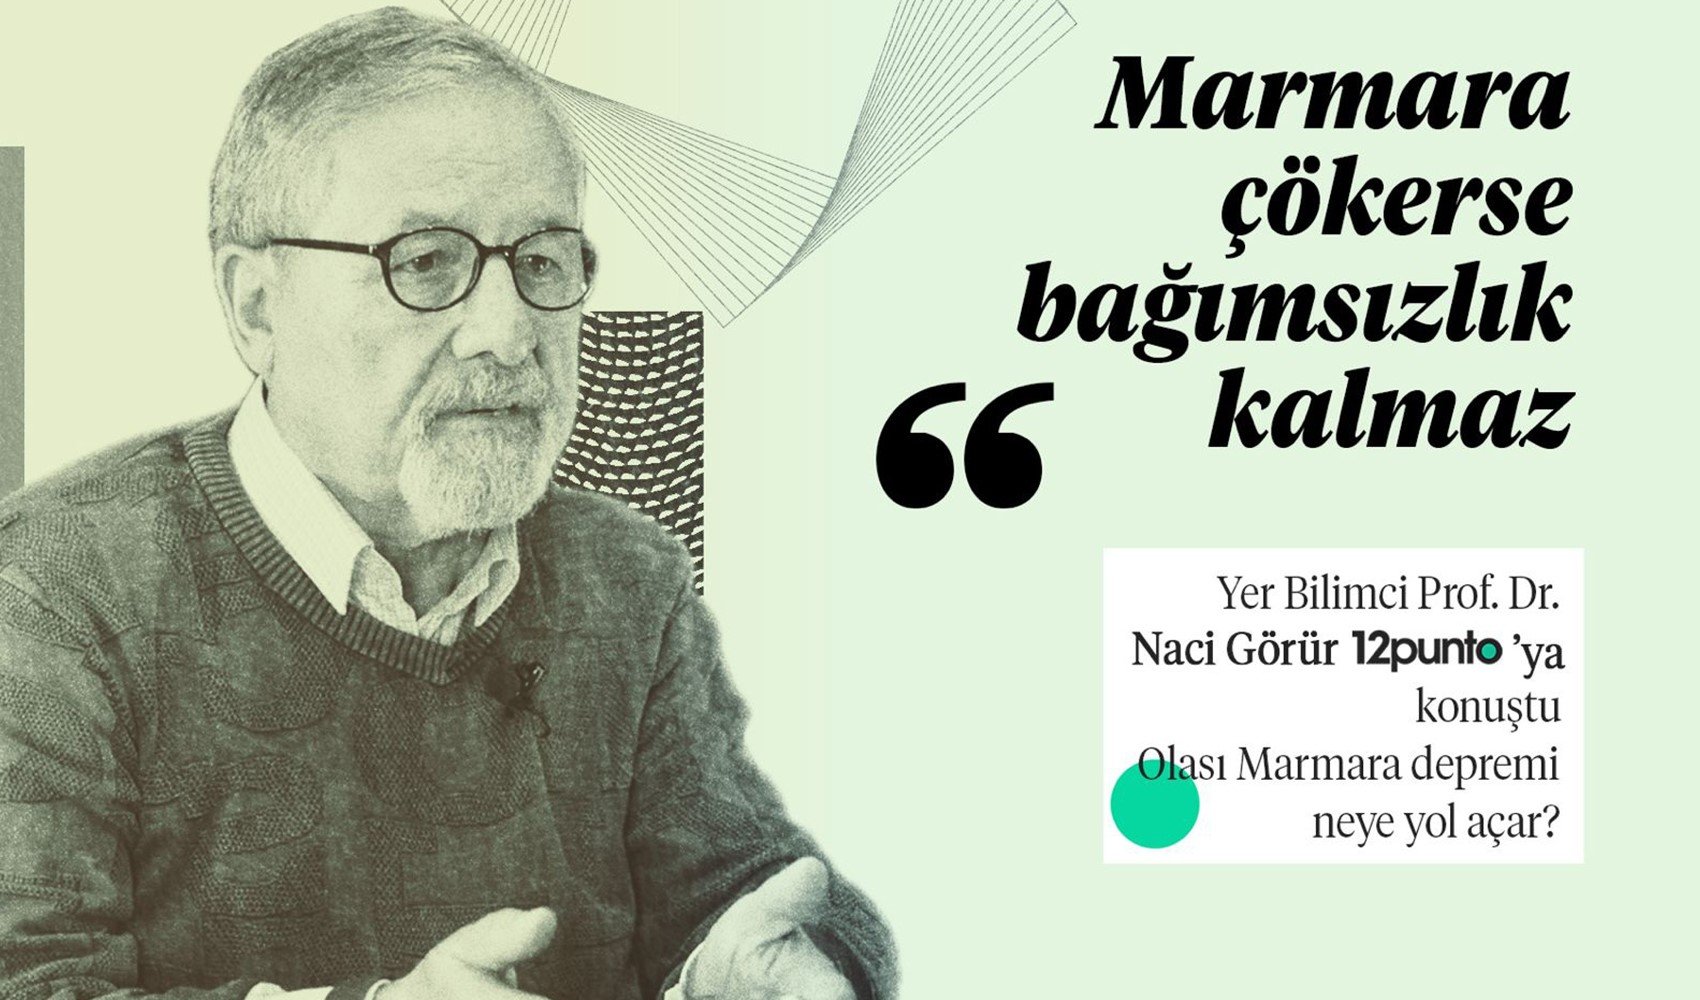 Prof. Dr. Naci Görür, 12punto'ya konuk oldu: 'Marmara çökerse, bağımsızlık kalmaz...'